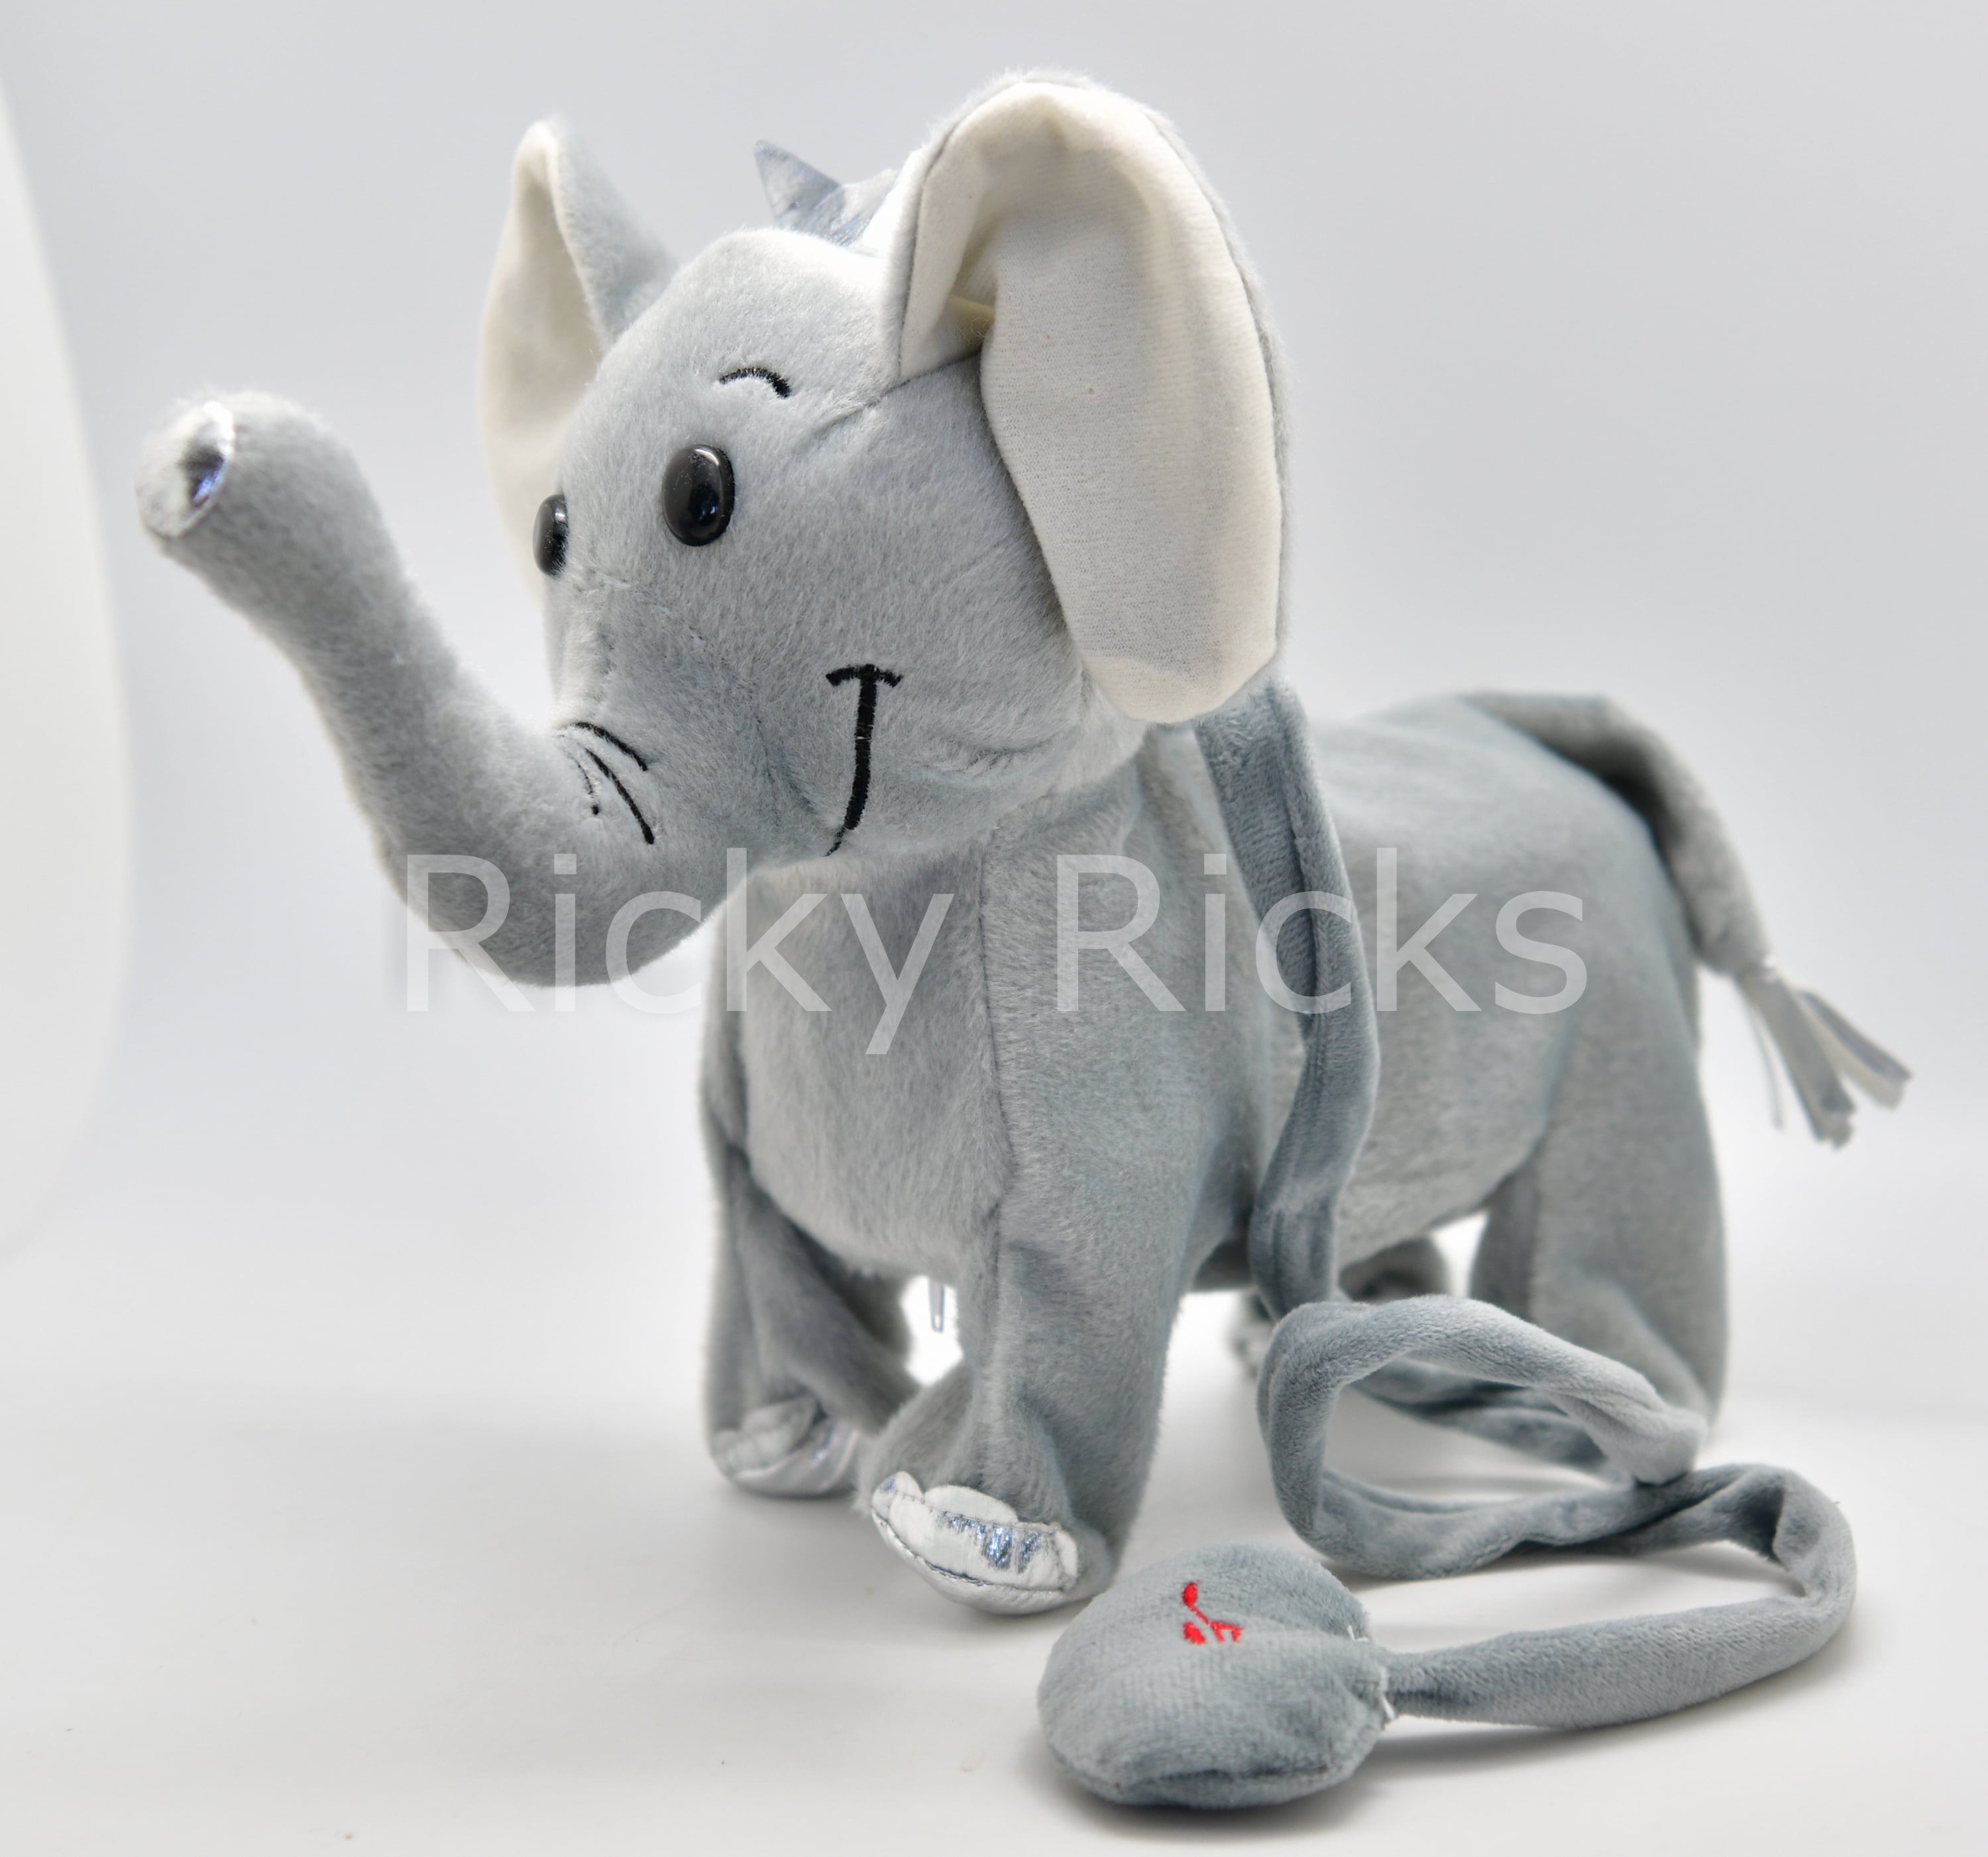 walking elephant toy